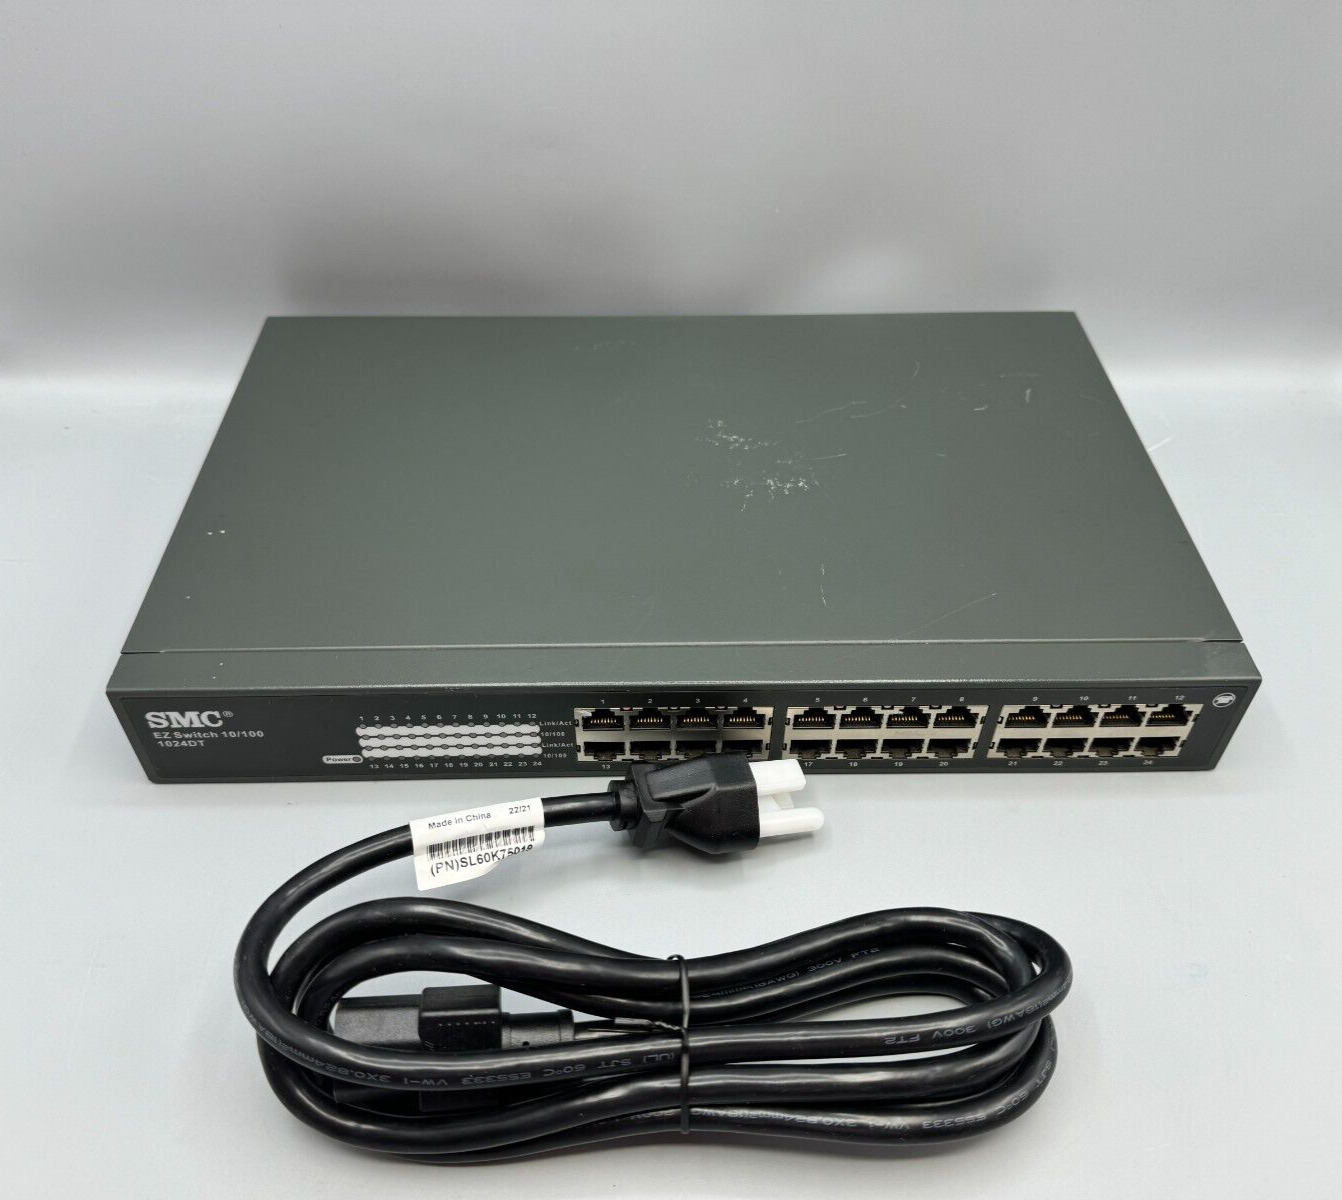 SMC Networks SMC-EZ1024DT 24 Port 10/100 Fast Ethernet EZ Switch